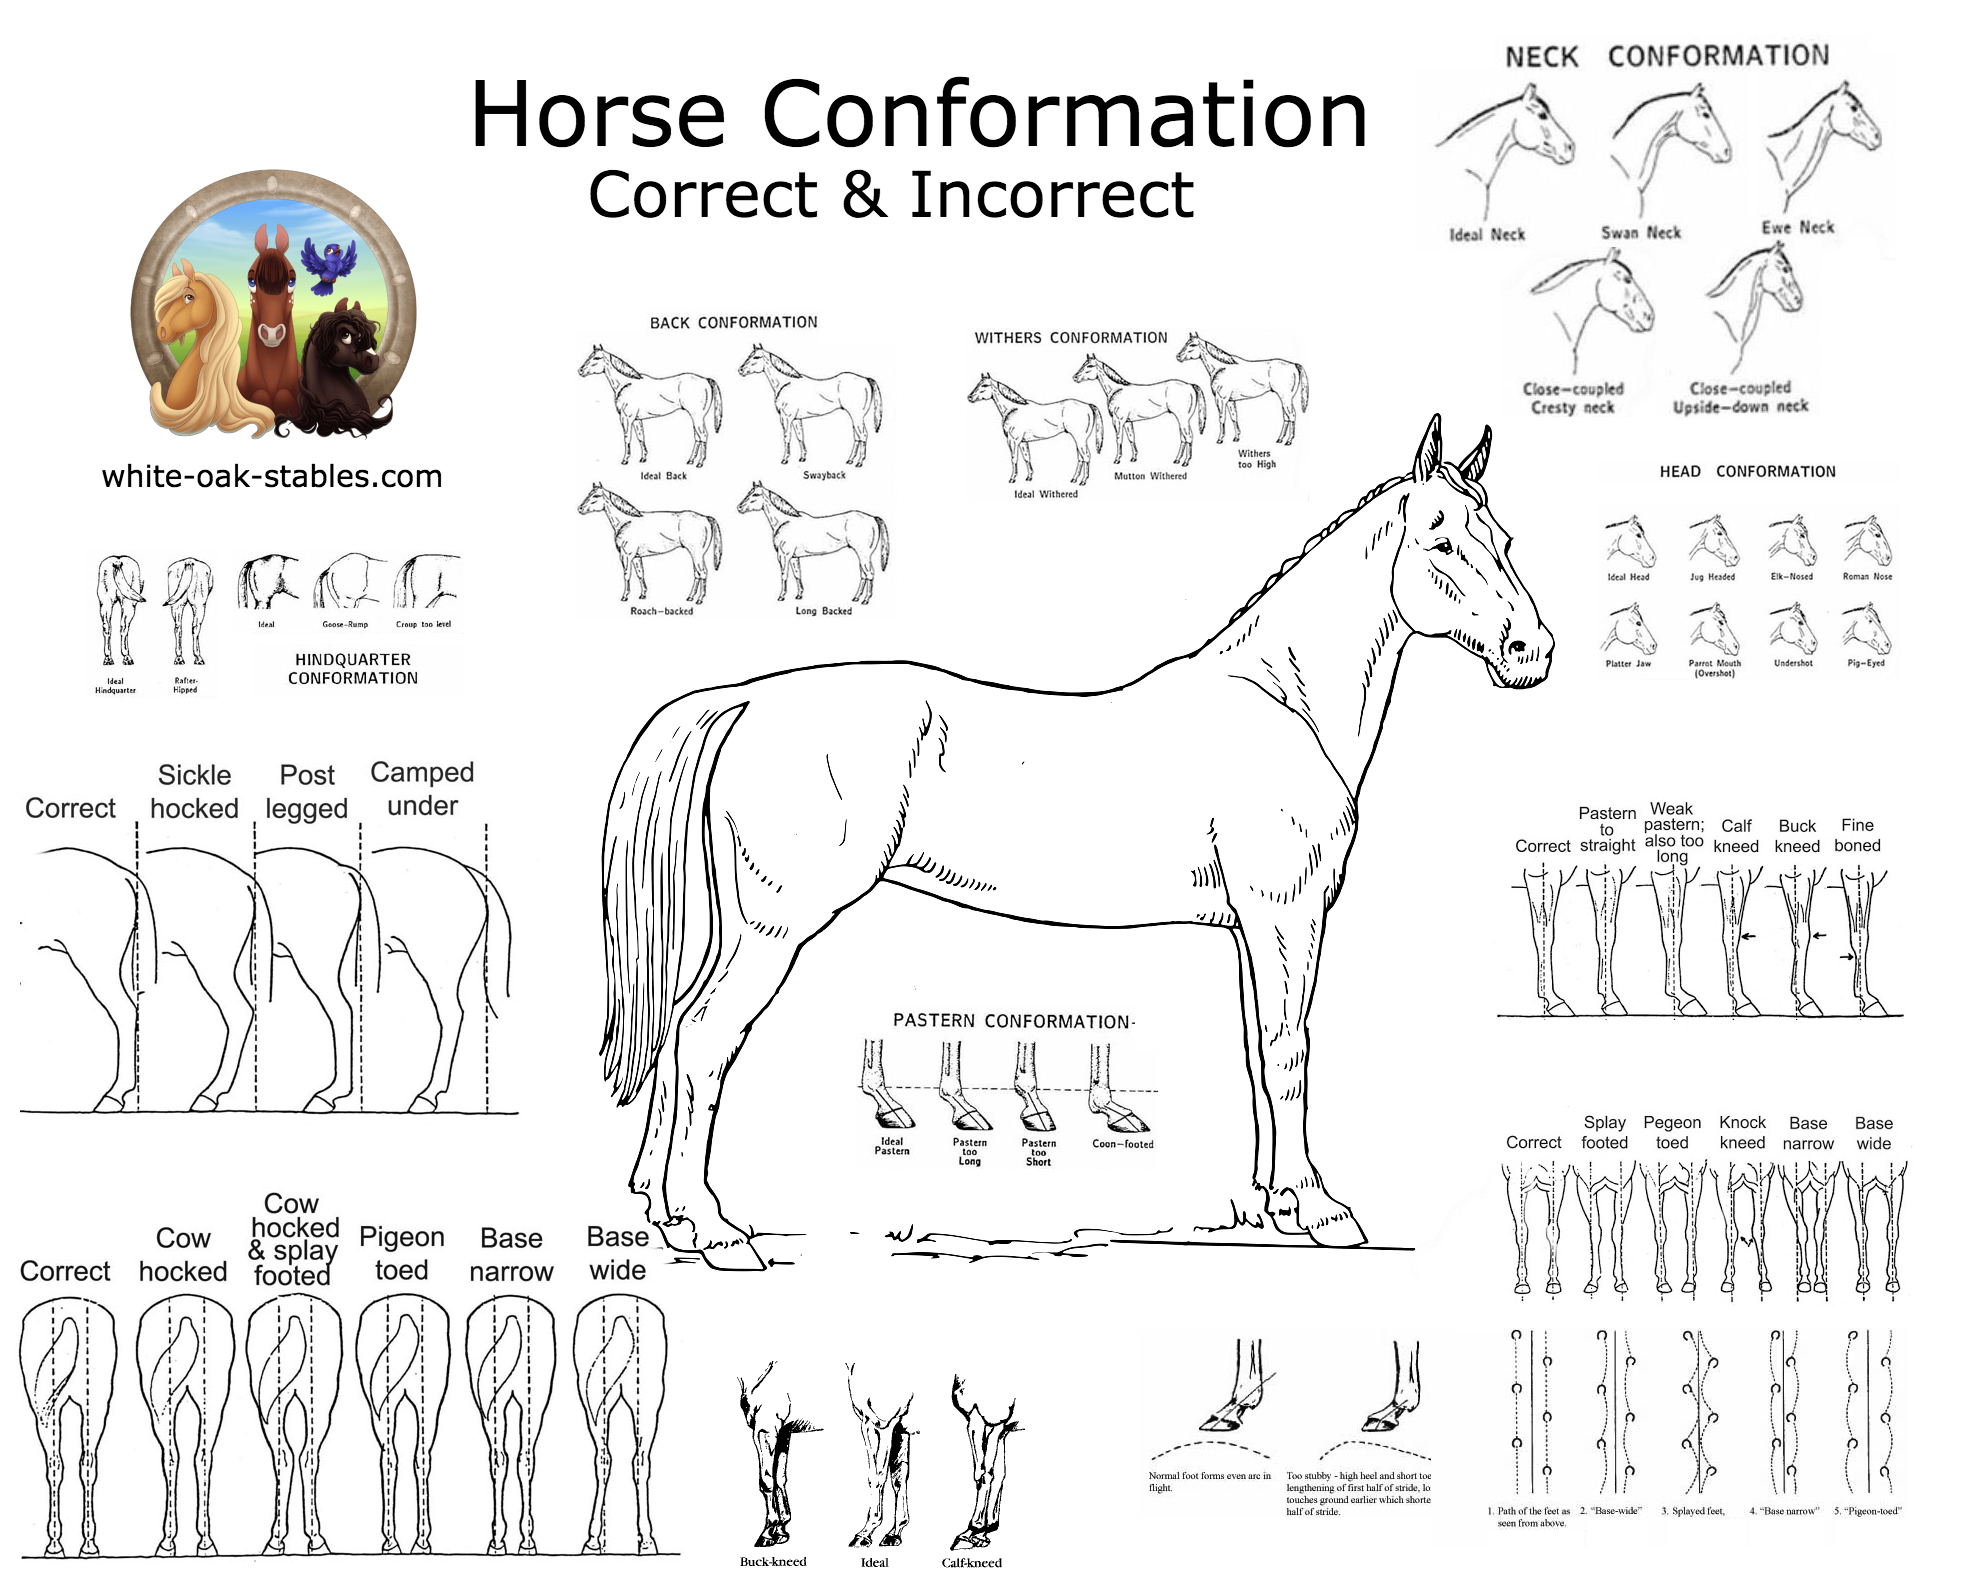 Visual: Horse Conformation